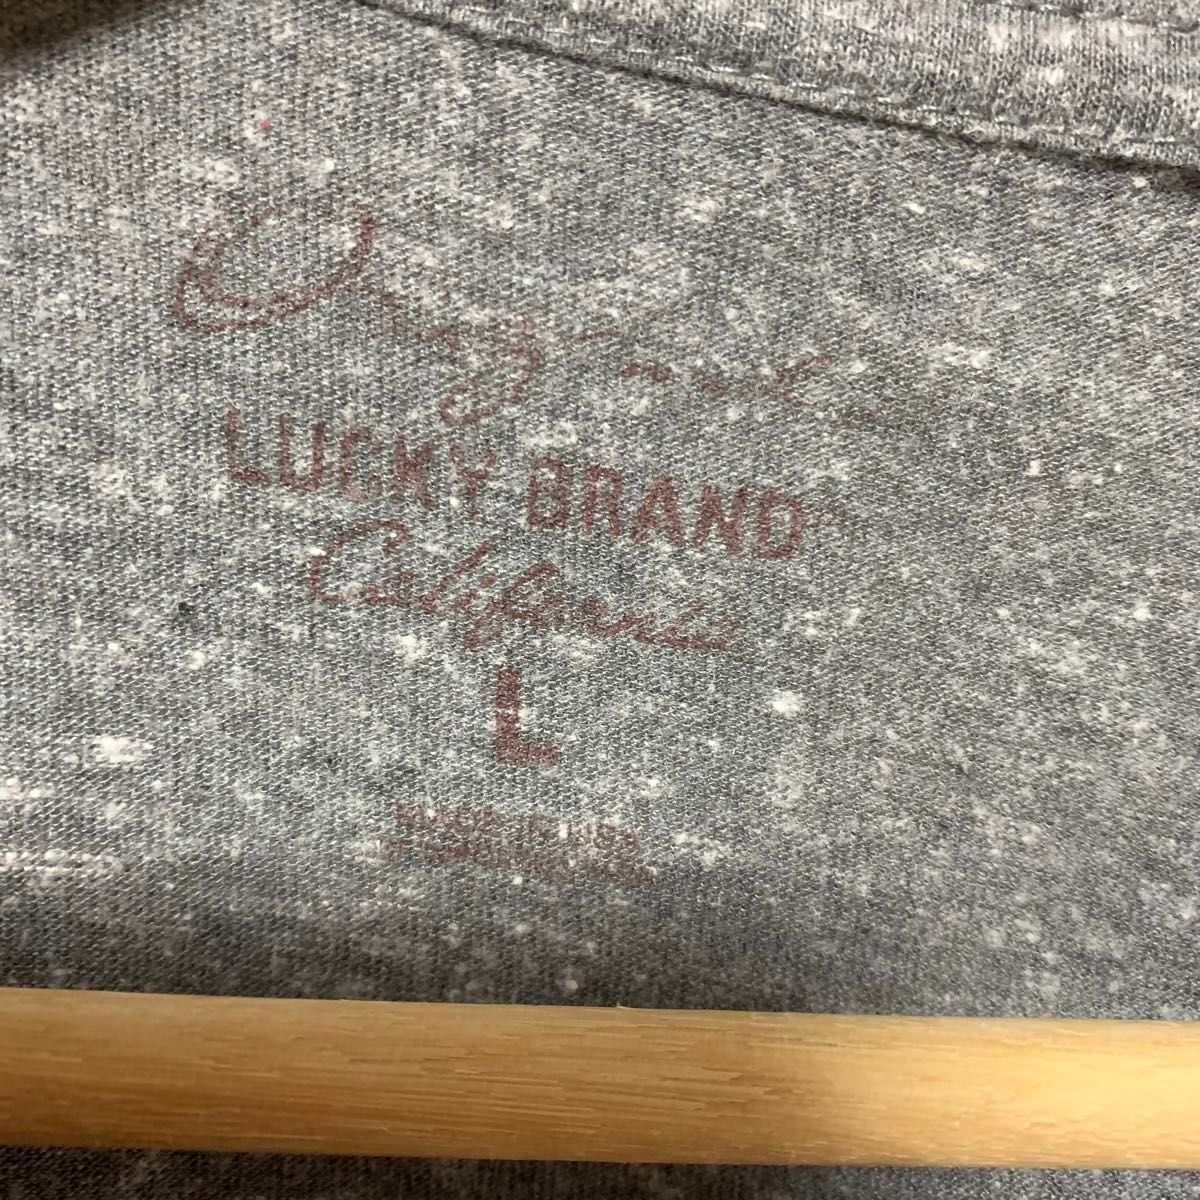 輸入古着 USA製 Lucky Brand ラッキーブランド Tシャツ エロプリント ヴィンテージ加工